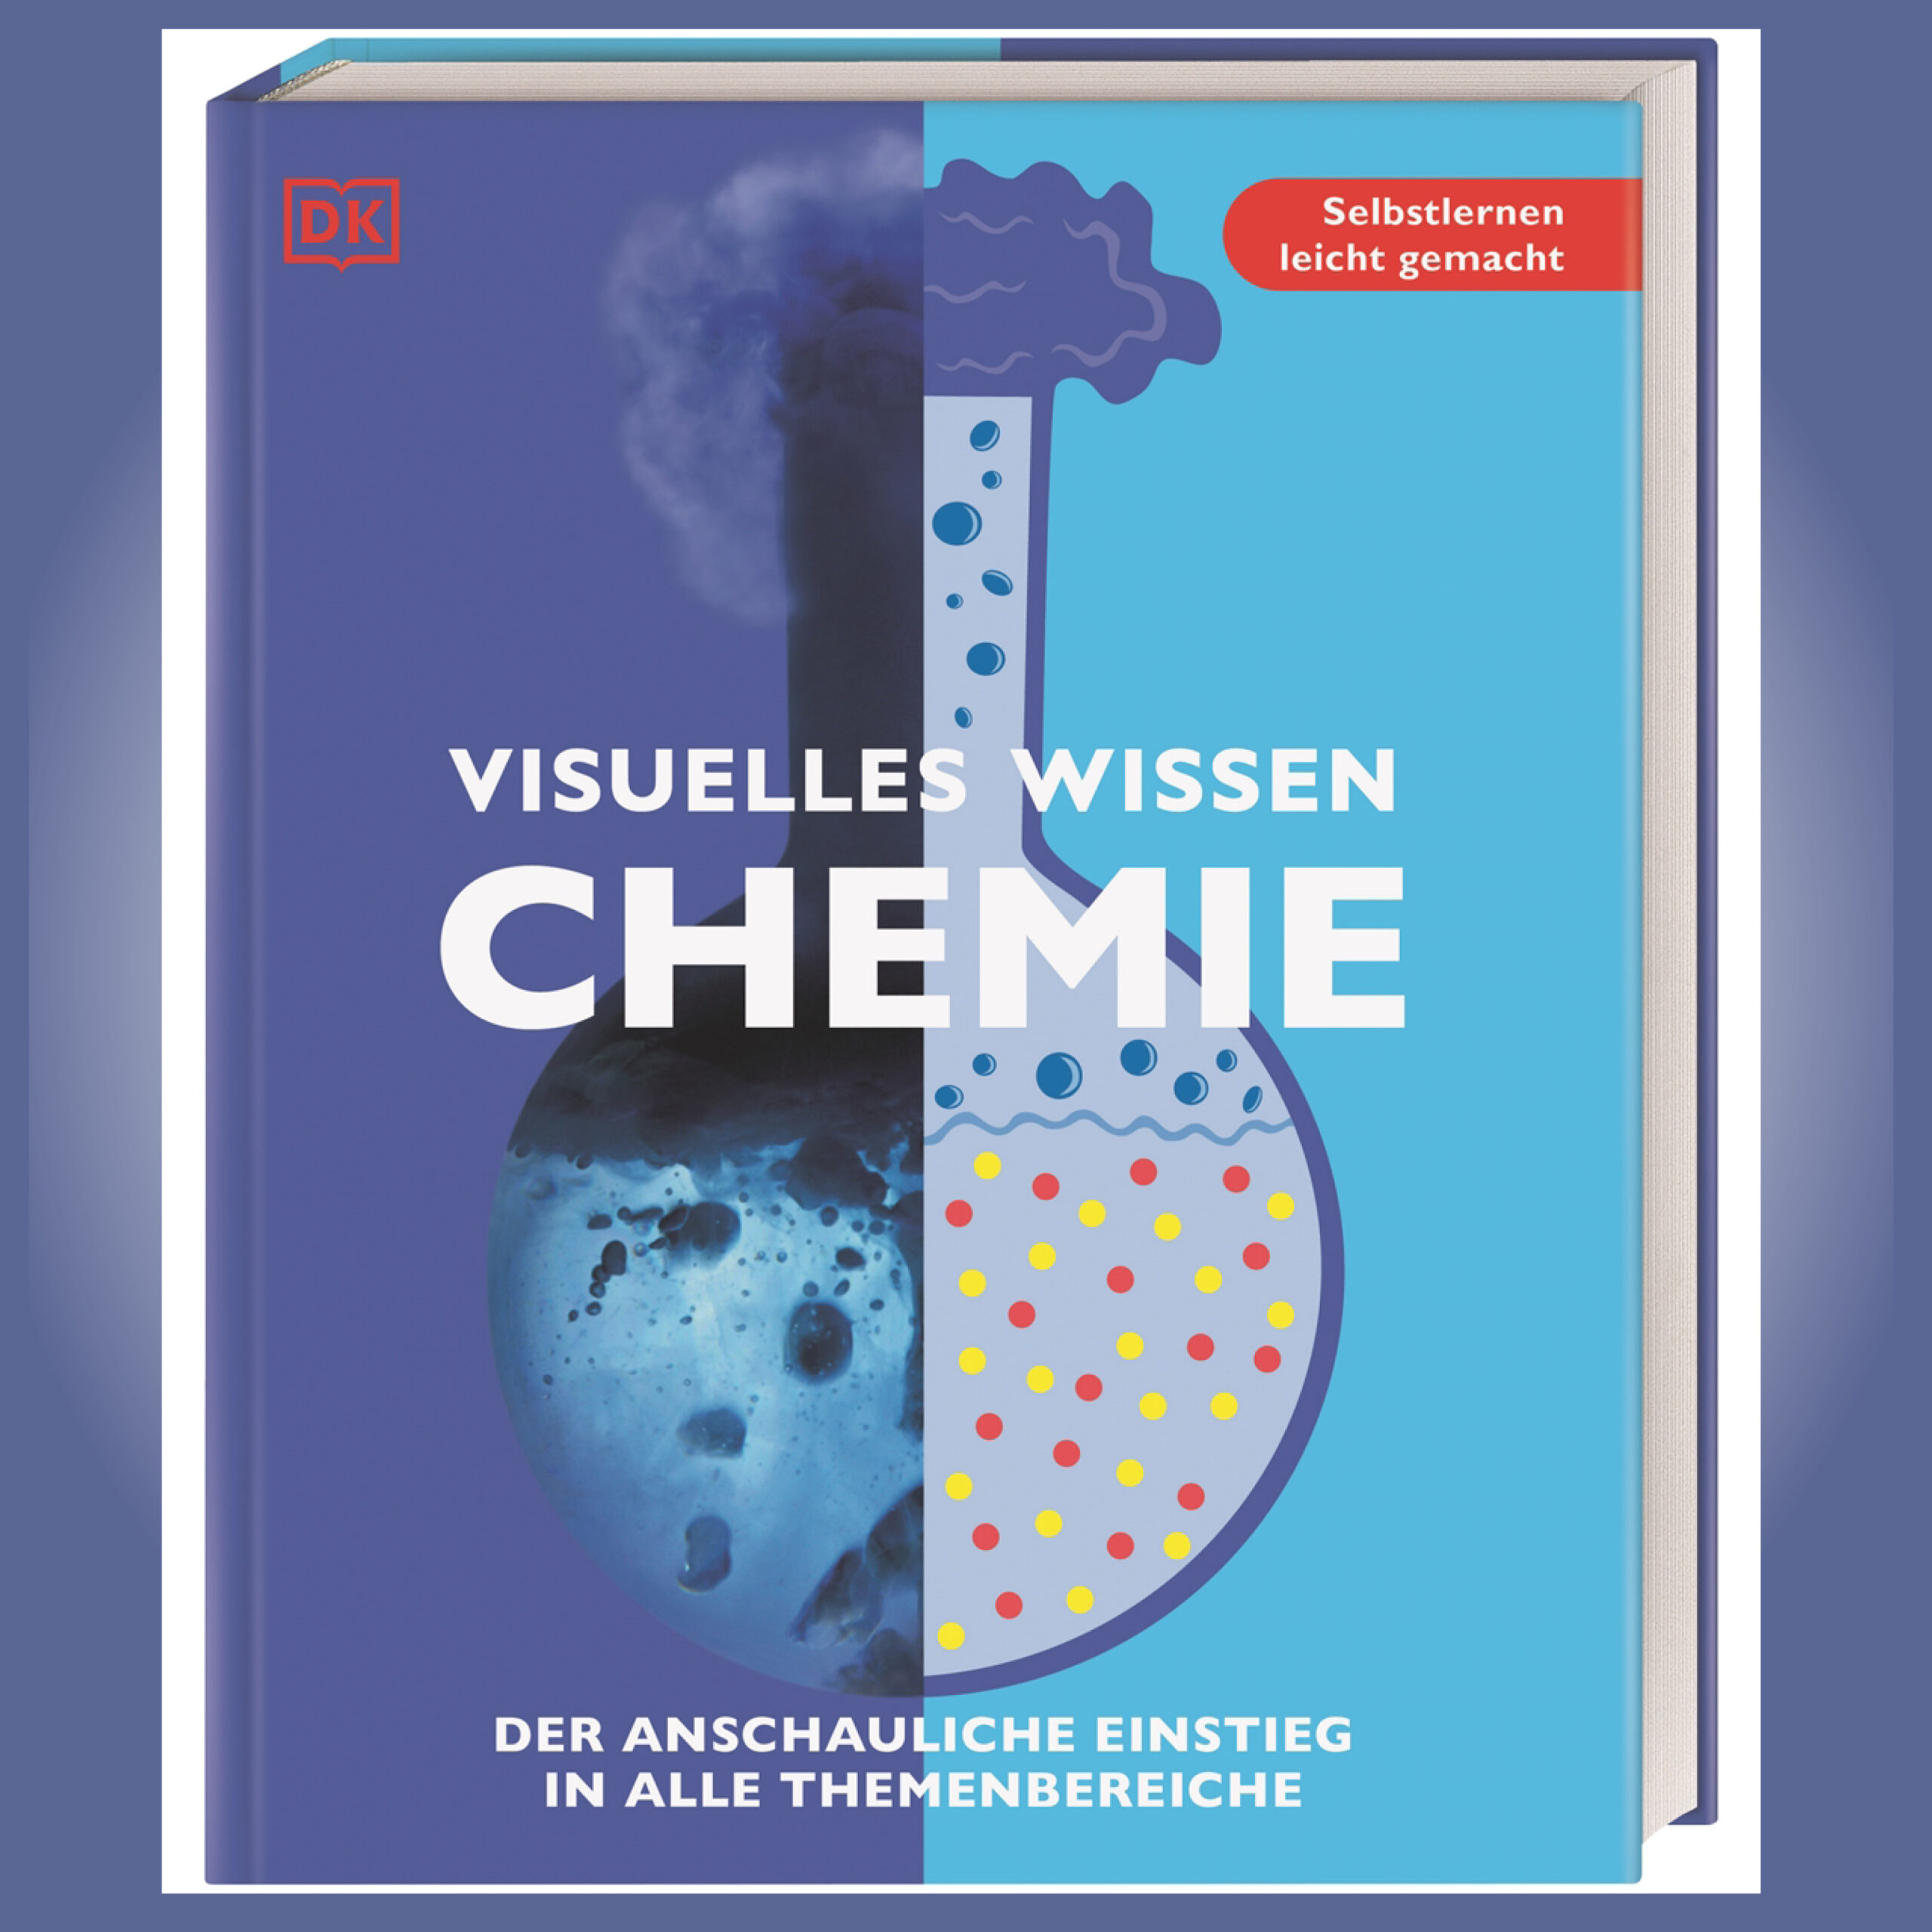 Cover von "Visuelles Wissen - Chemie", DK, München, 2021